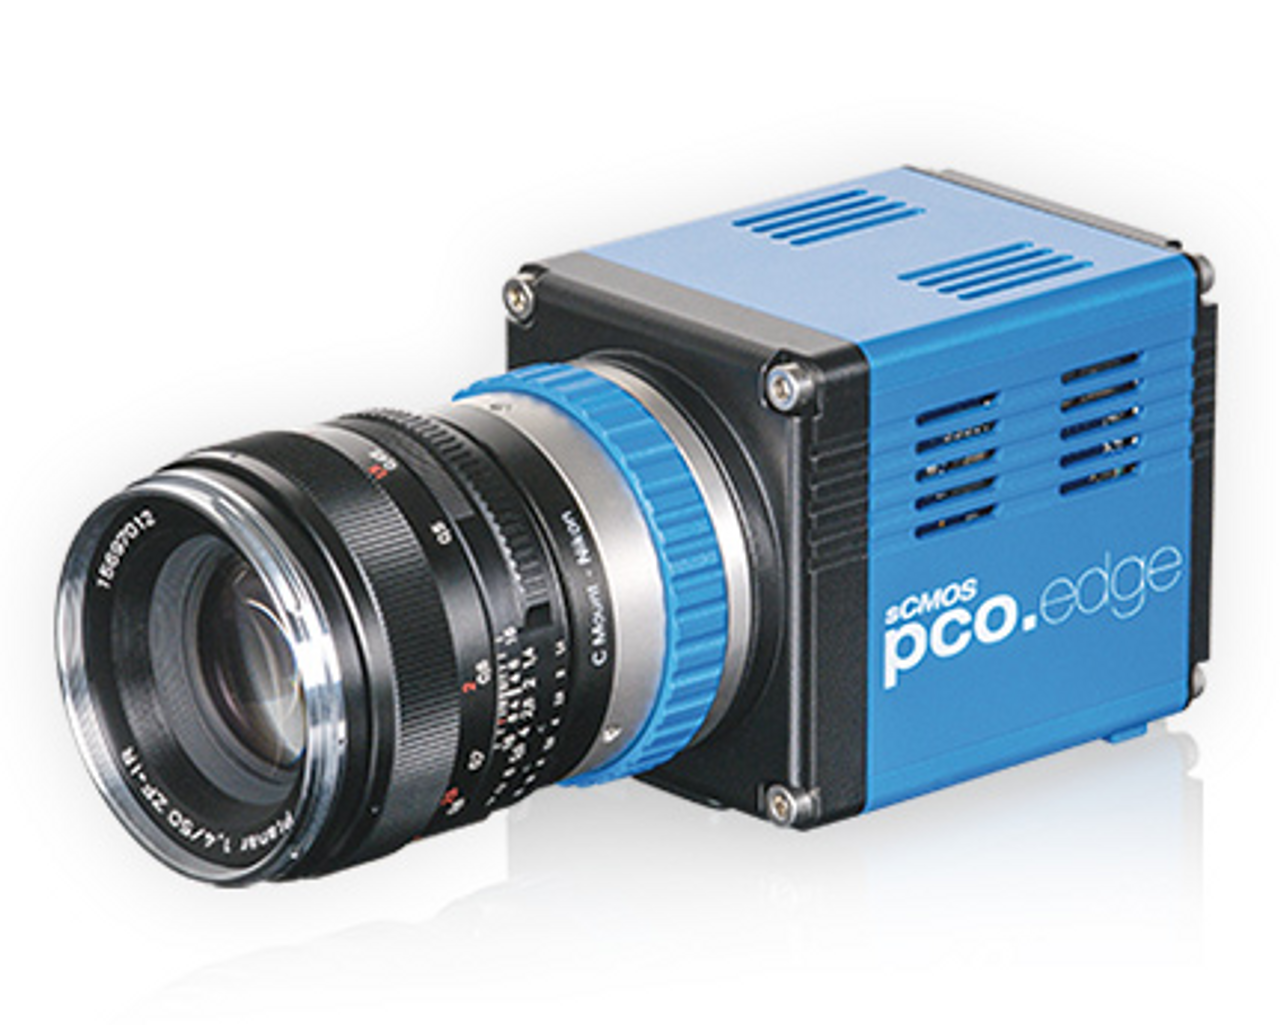 pco.edge 5.5 scientific CMOS camera